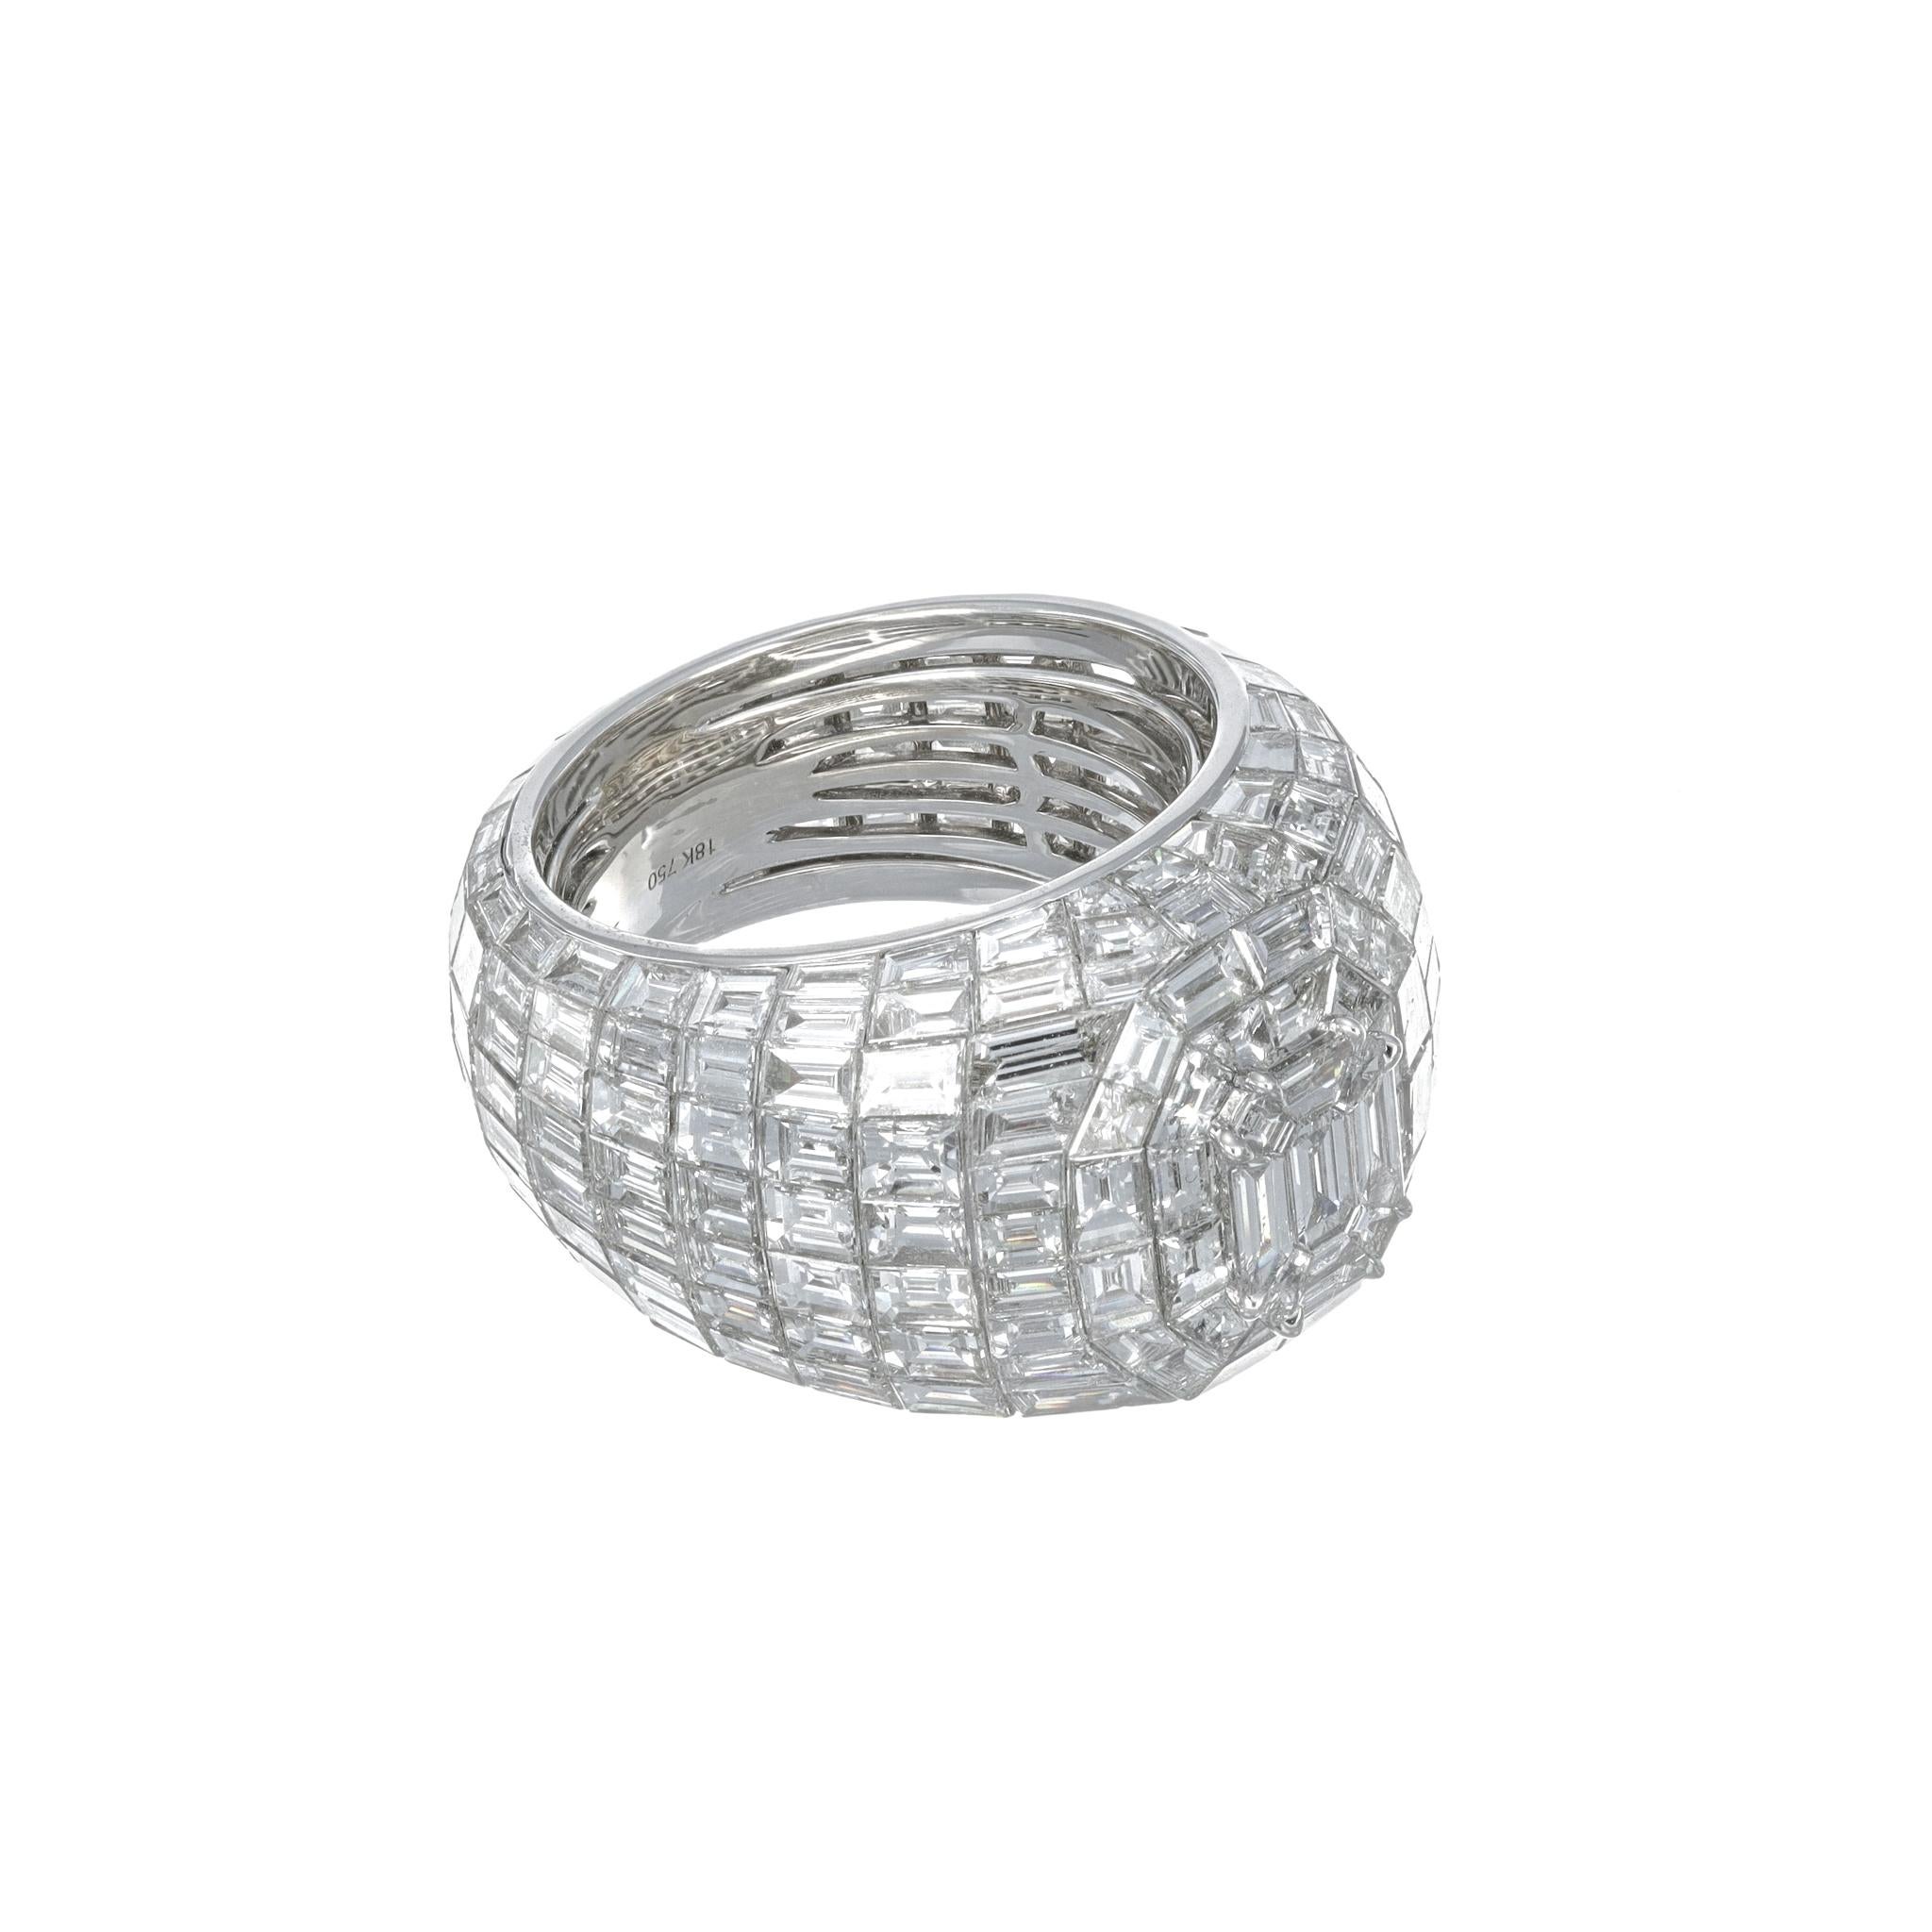 La bague Baguette Diamonds n'est pas seulement un symbole de luxe et de design haut de gamme, mais aussi un accessoire éblouissant que vous pouvez porter en toute confiance à n'importe quelle fête. Cette bague de cocktail, ornée de 22,60 carats de